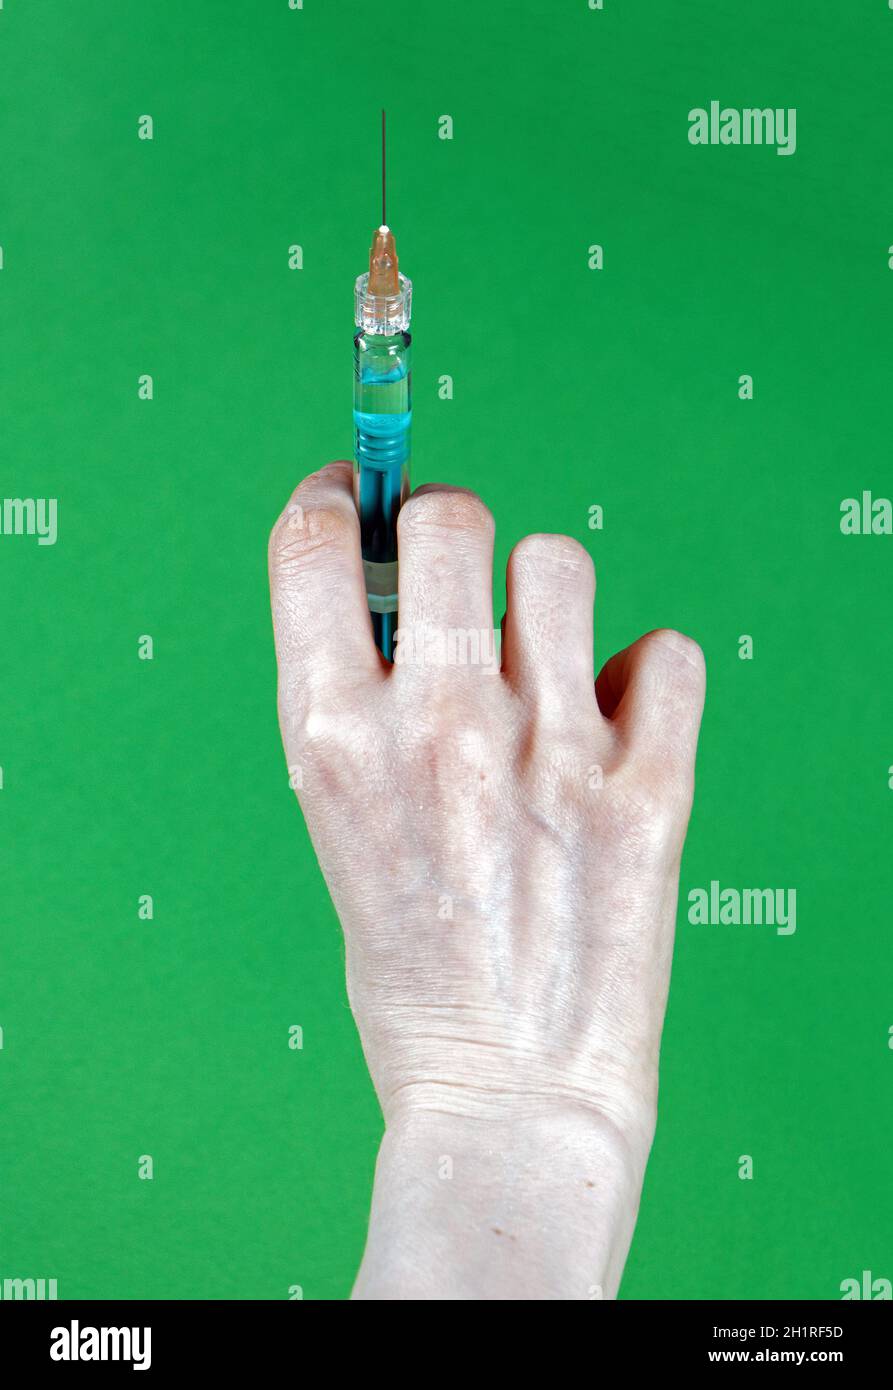 Female hand holding full syringe with needle without medical glove Stock Photo